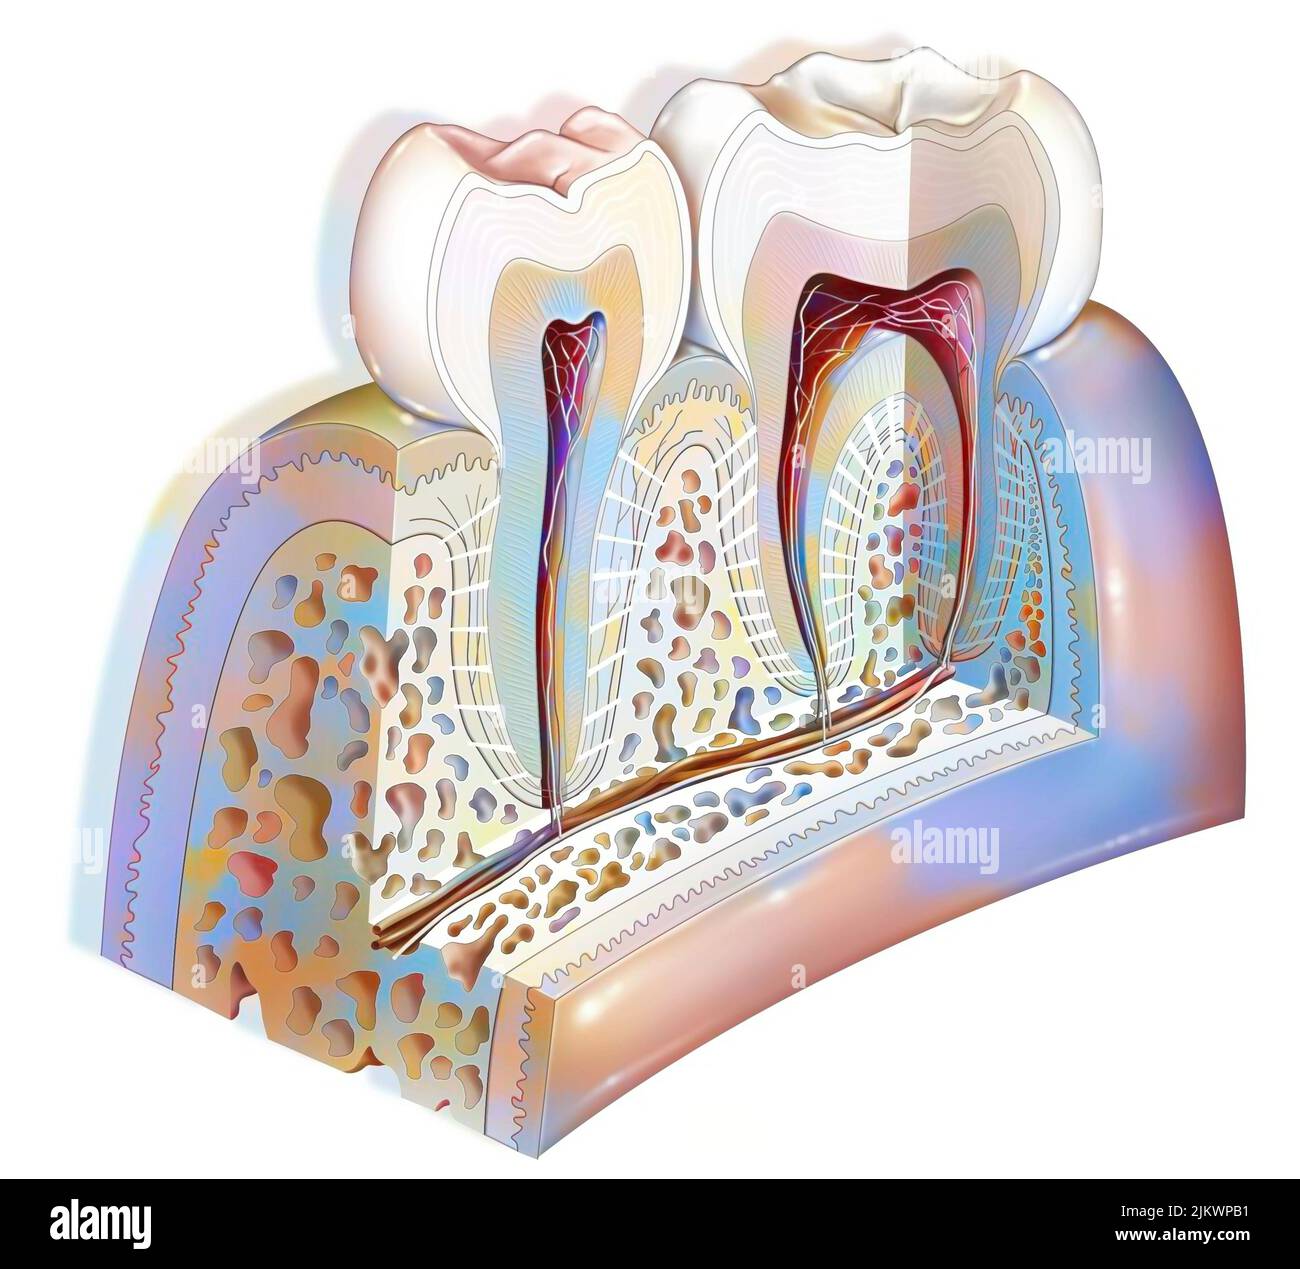 Anatomia del dente che mostra lo smalto, dentina, polpa. Foto Stock